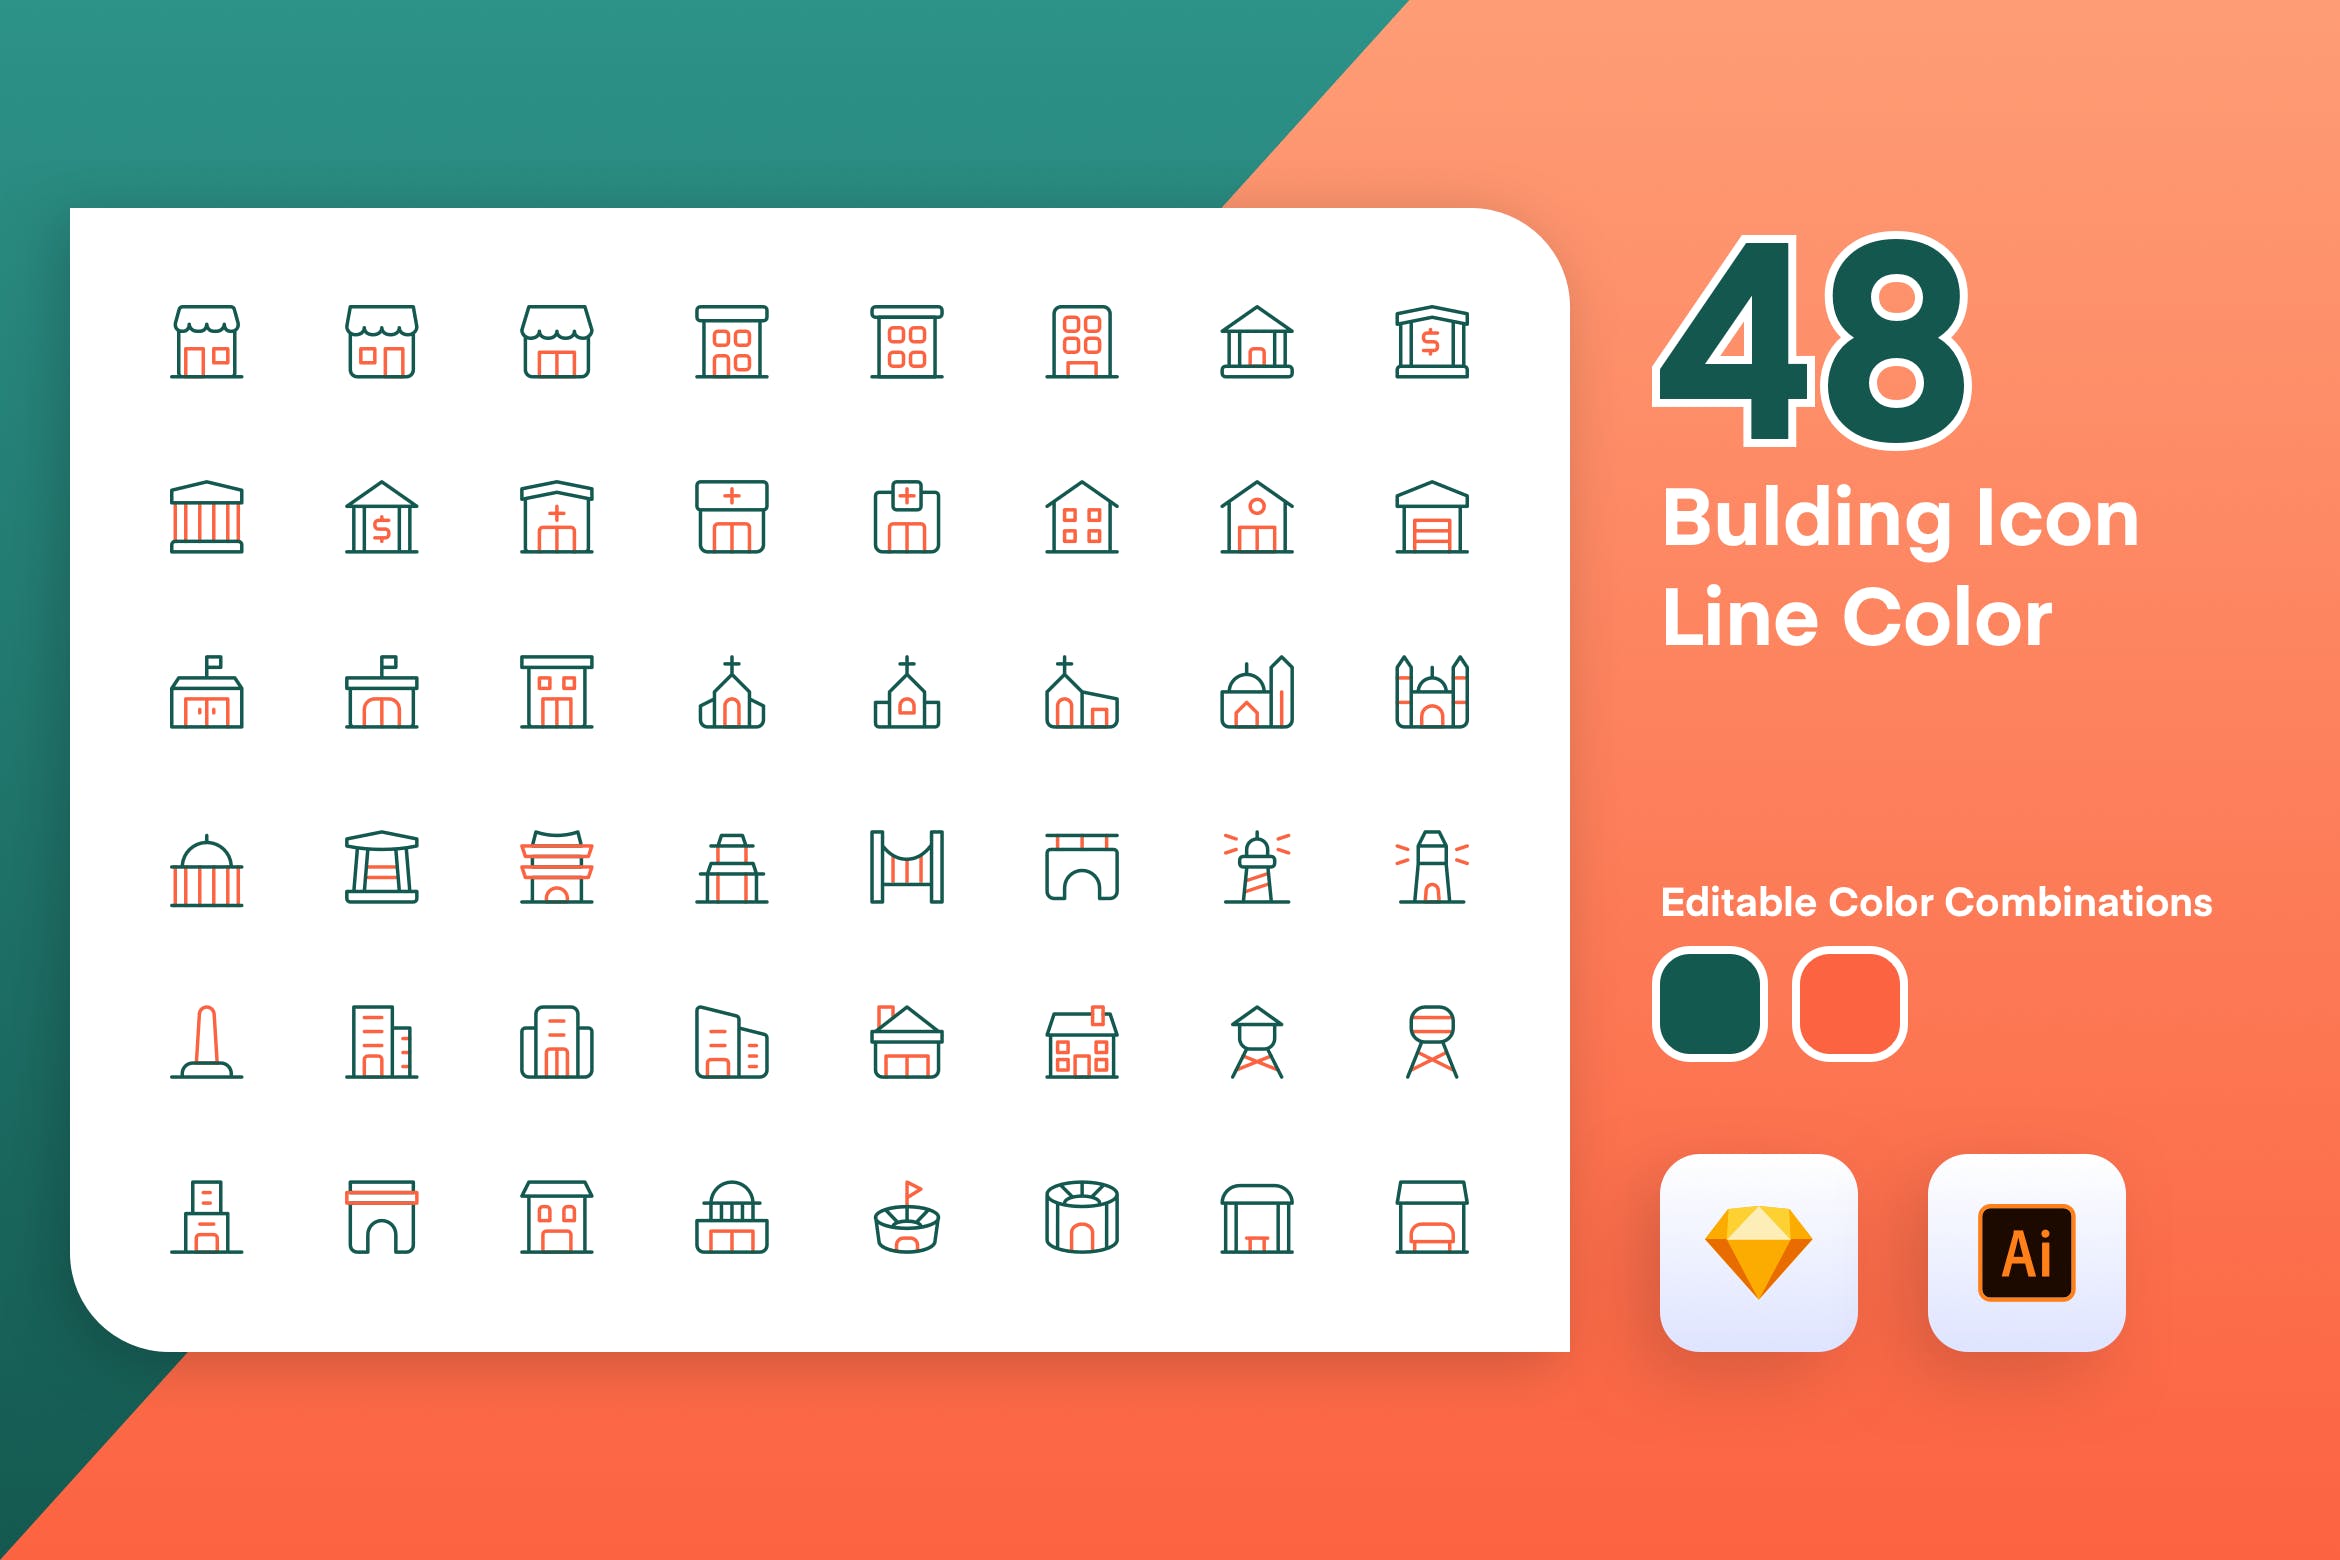 48枚建筑主题彩色矢量线性蚂蚁素材精选图标素材 Building Icon Line Color插图